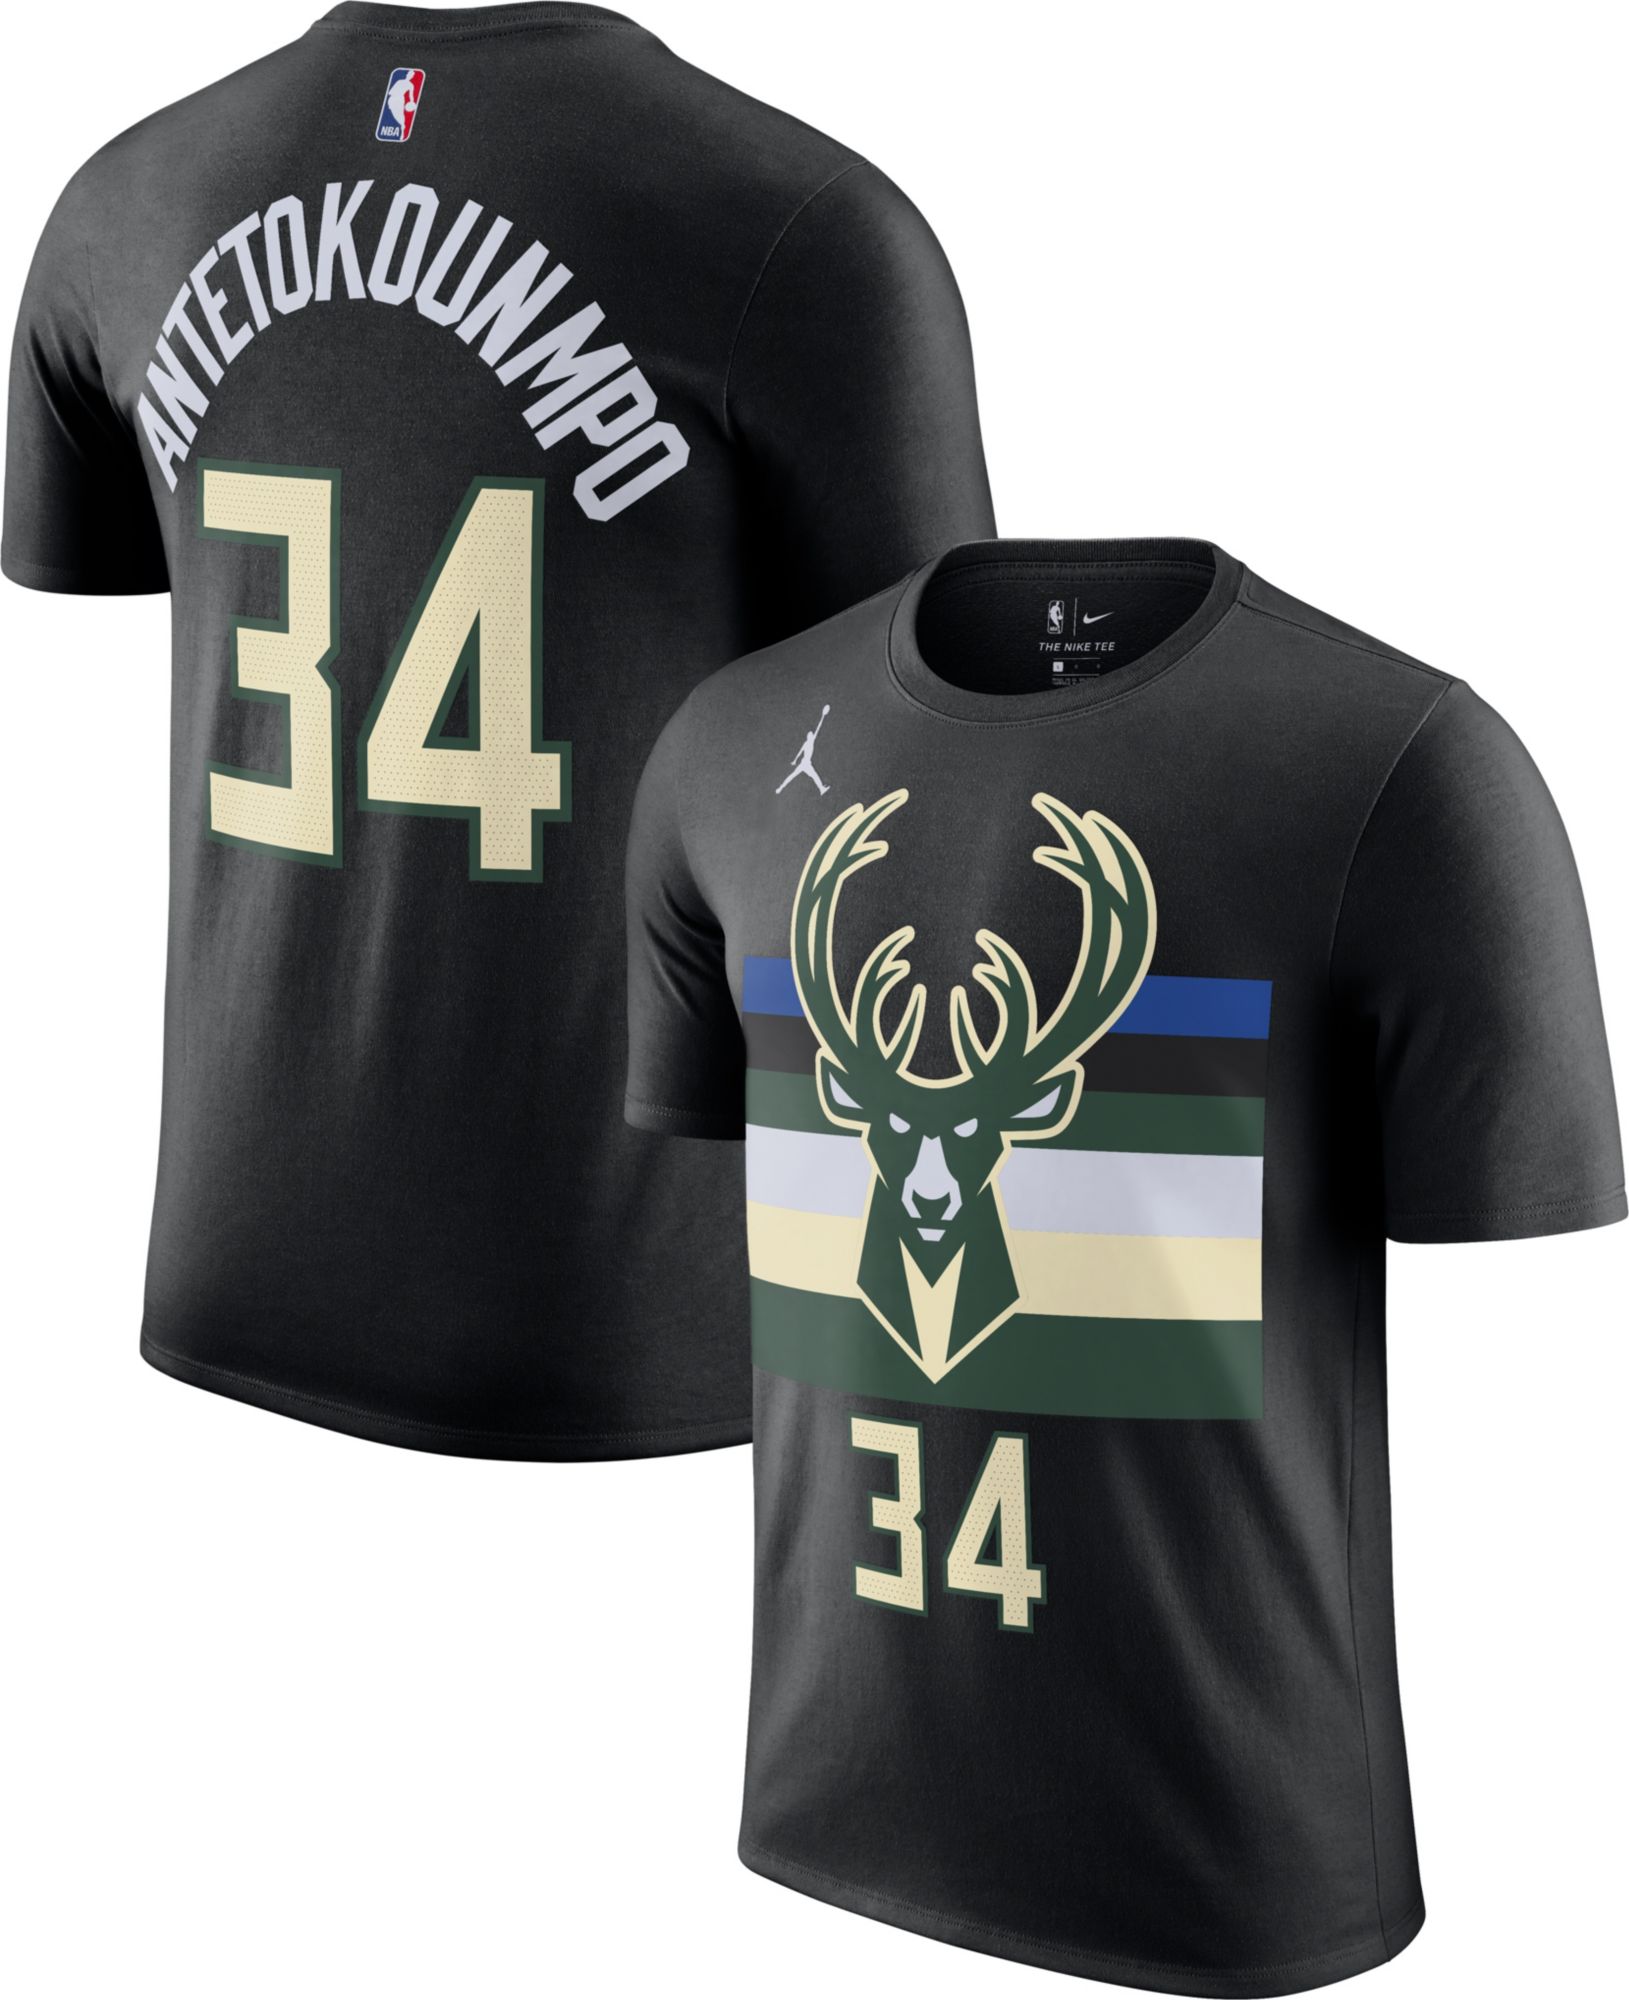 Sjældent sektor motivet Nike / Men's Milwaukee Bucks Giannis Antetokounmpo #34 Black Cotton T-Shirt